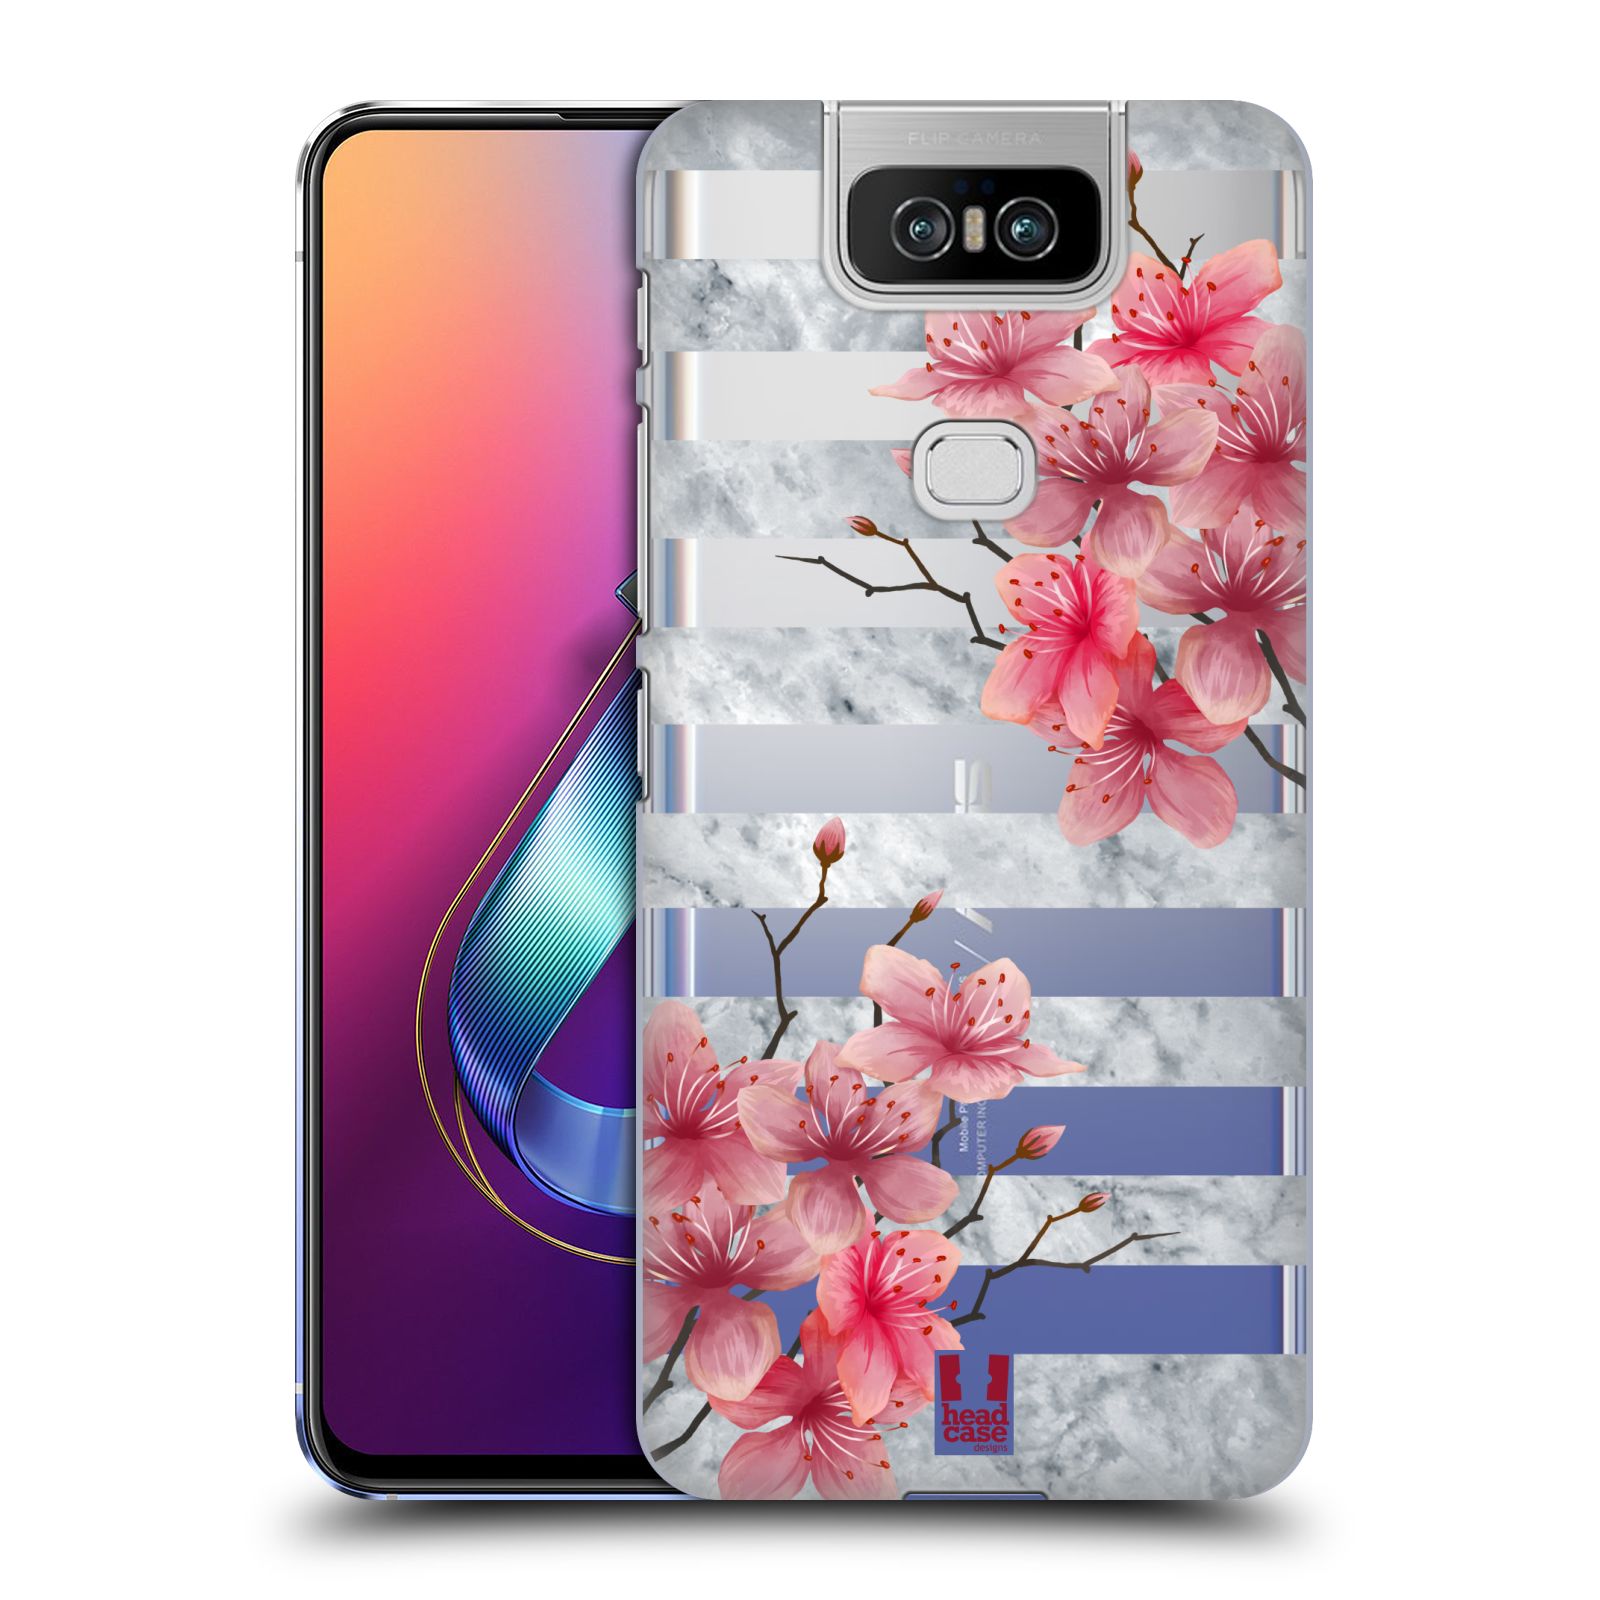 Pouzdro na mobil Asus Zenfone 6 ZS630KL - HEAD CASE - růžové květy v rozkvětu a mramor